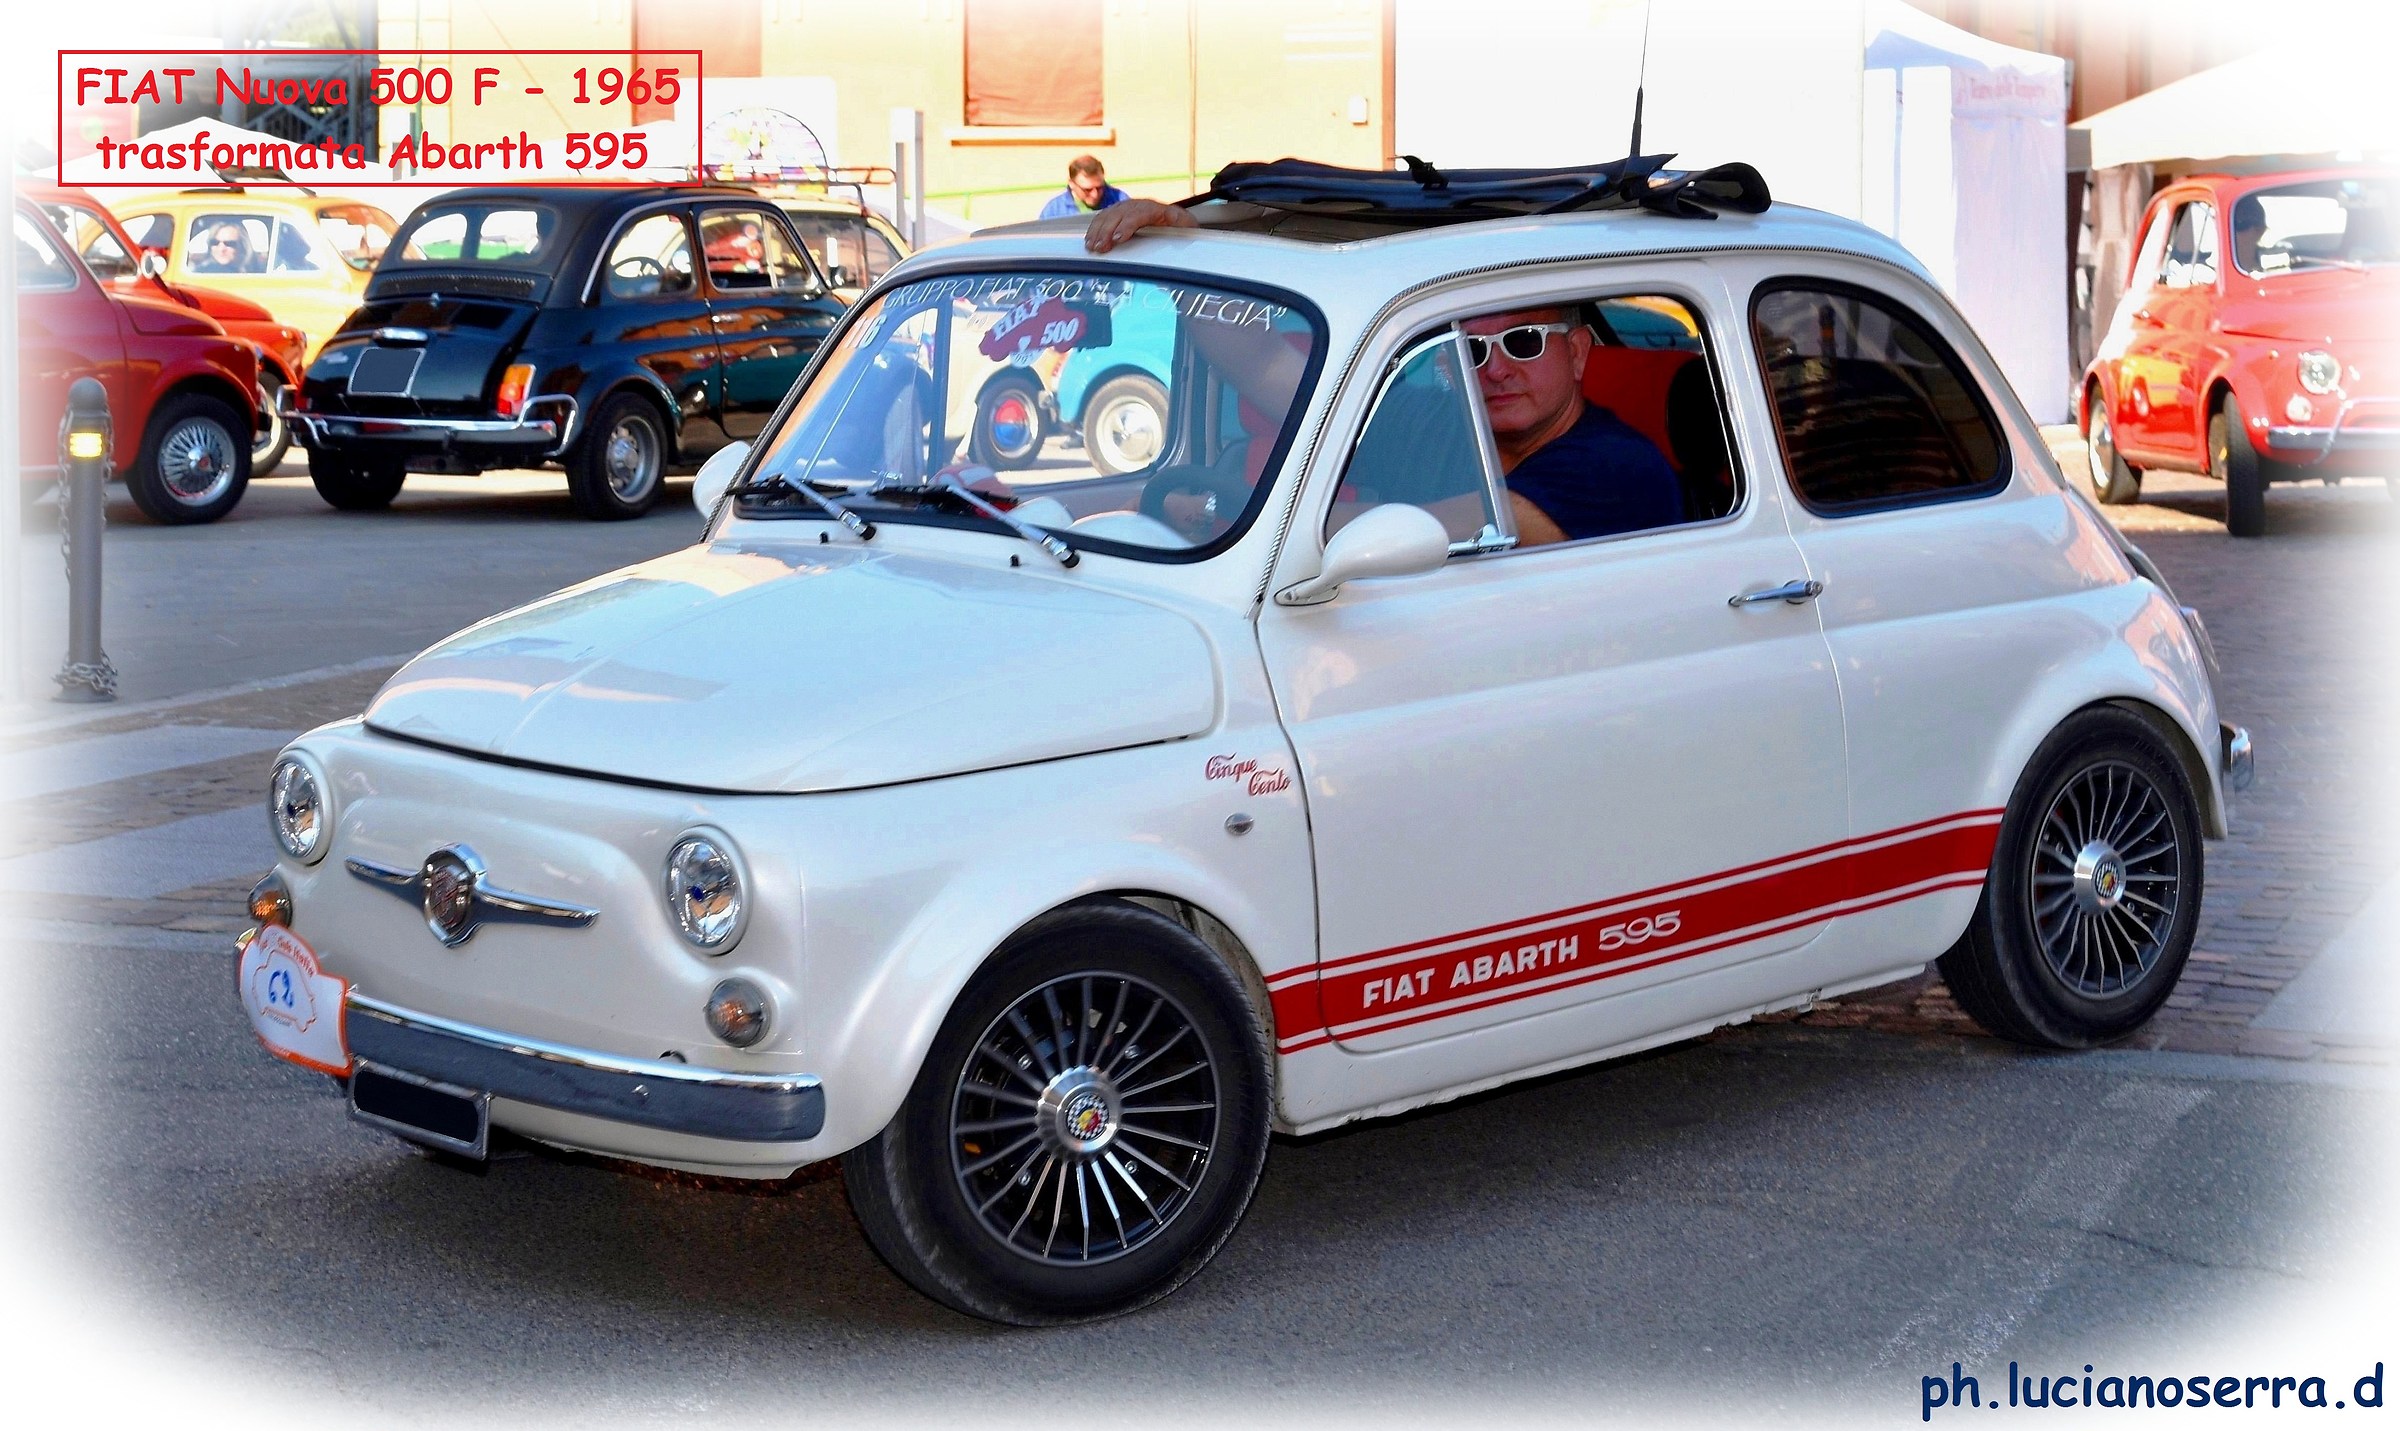 Fiat Nuova 500 F - 1965 trasformata Abarth...